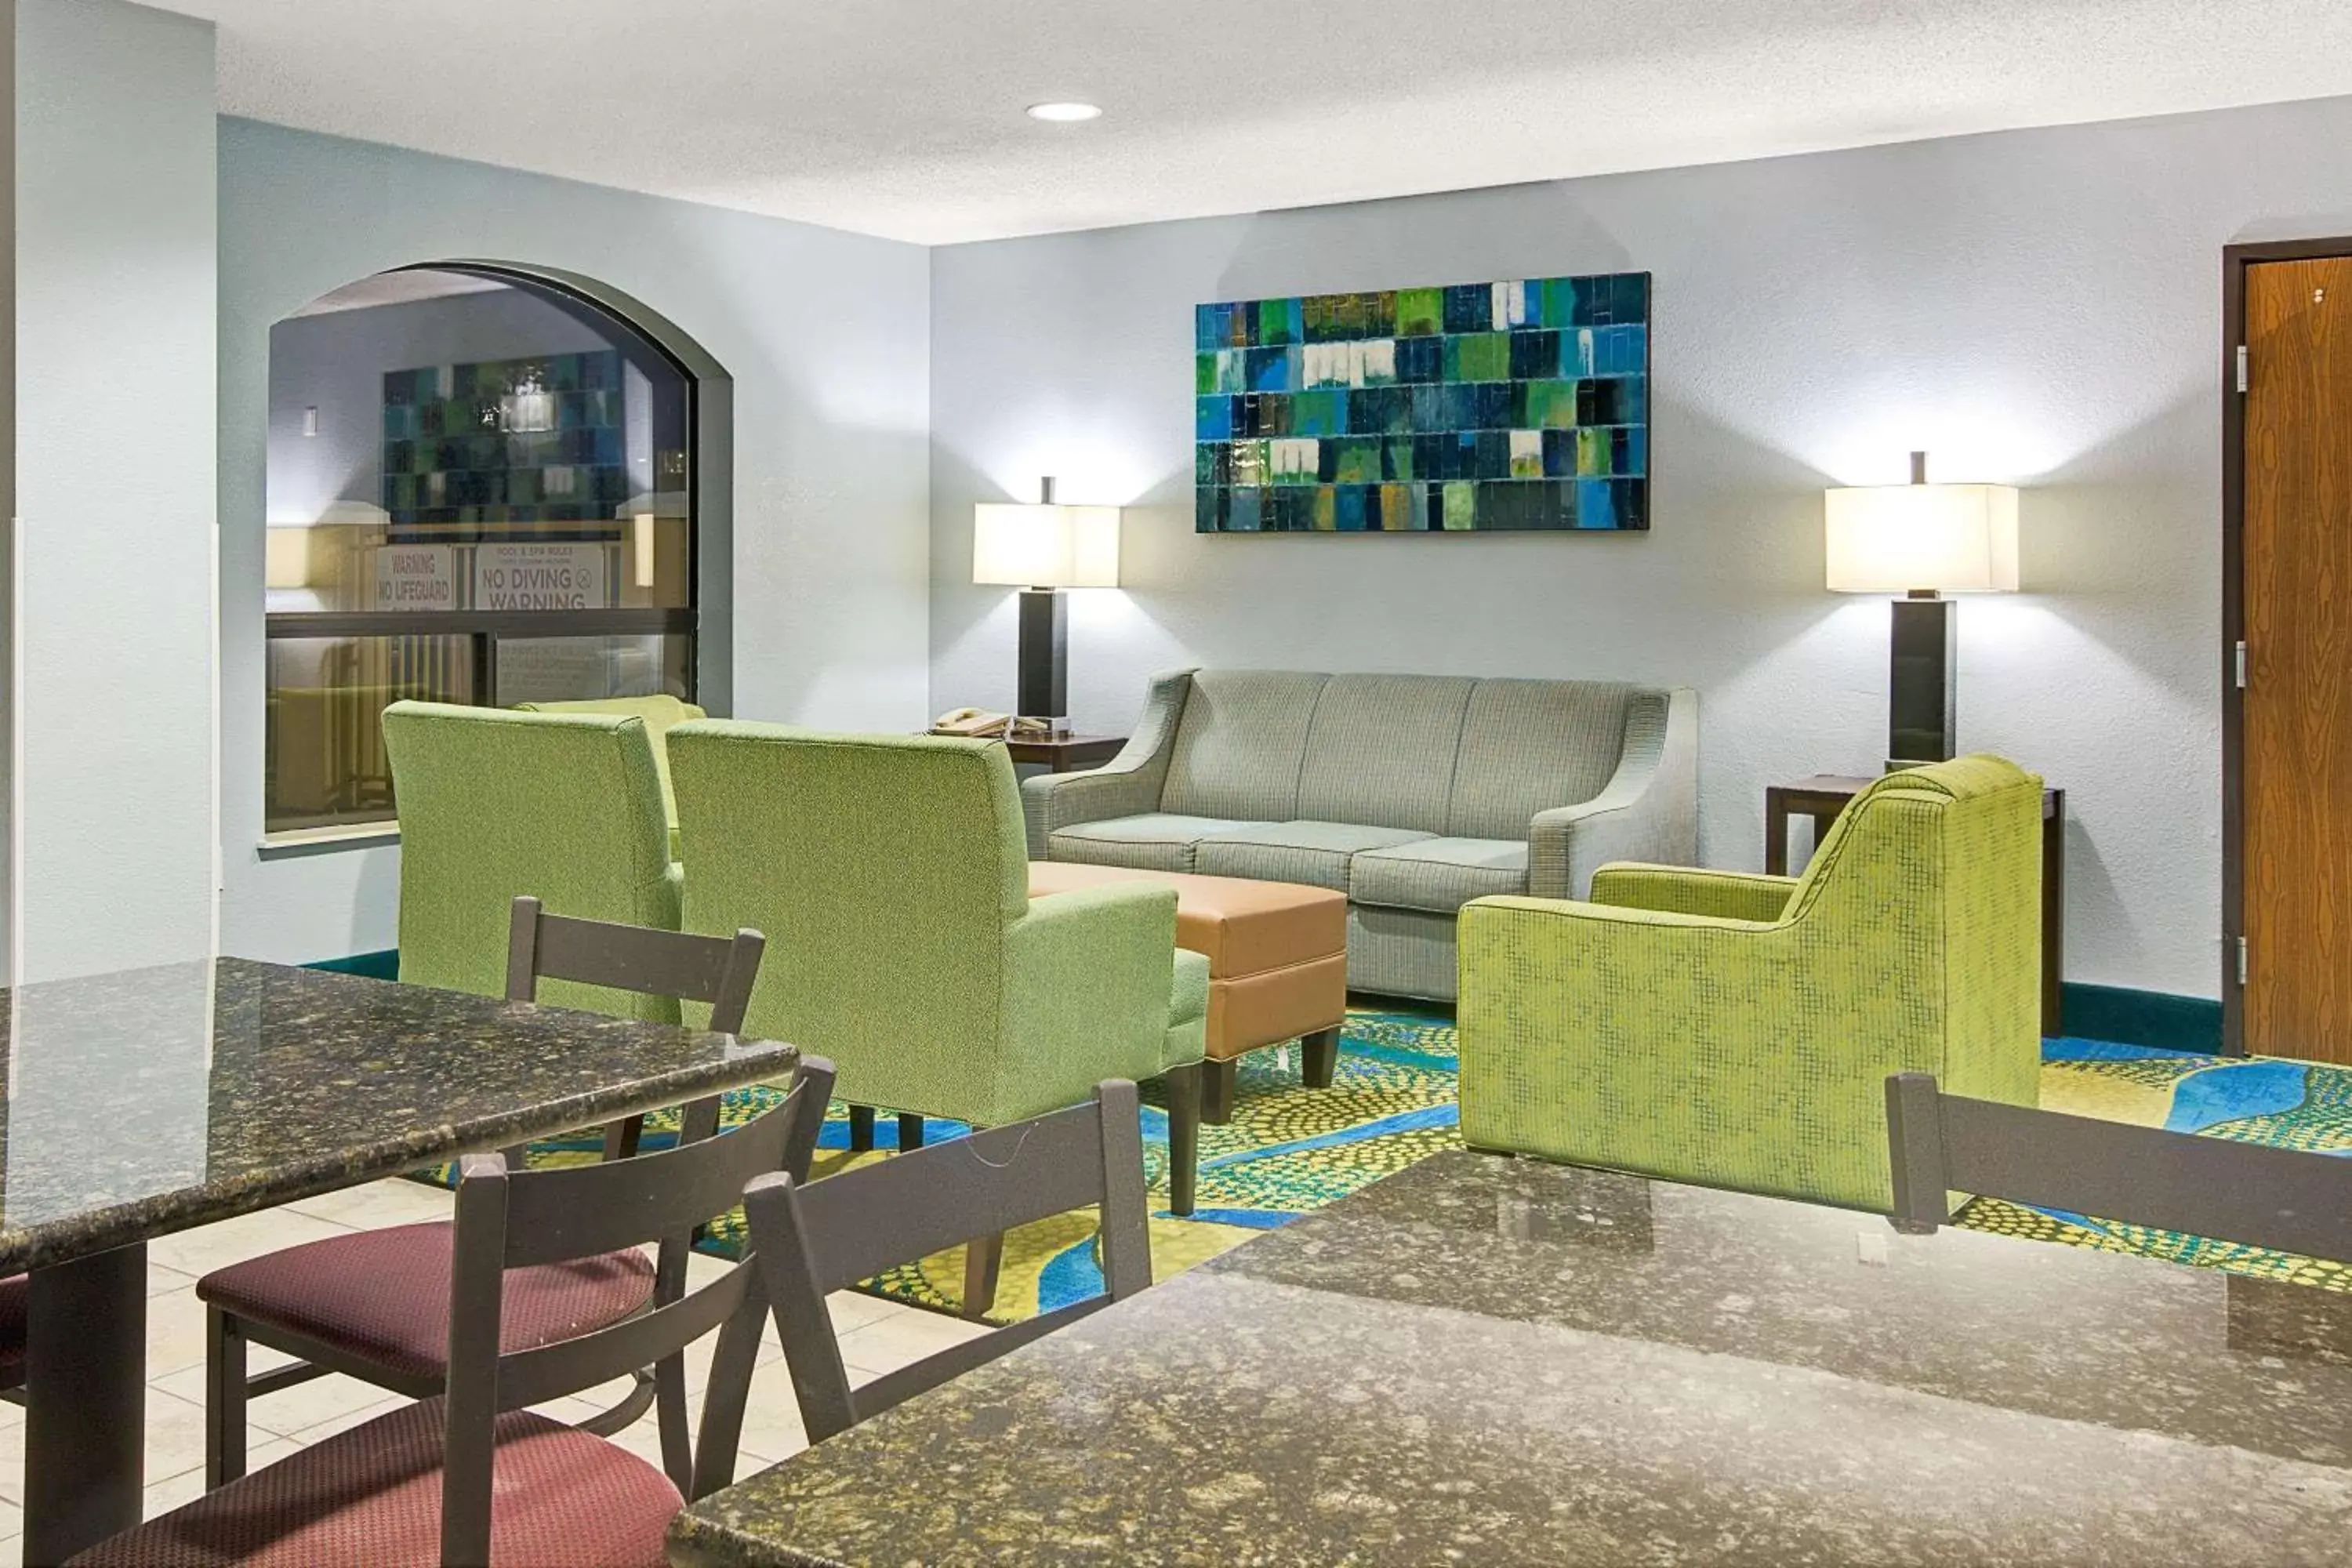 Lobby or reception in Days Inn by Wyndham Dallas Garland West